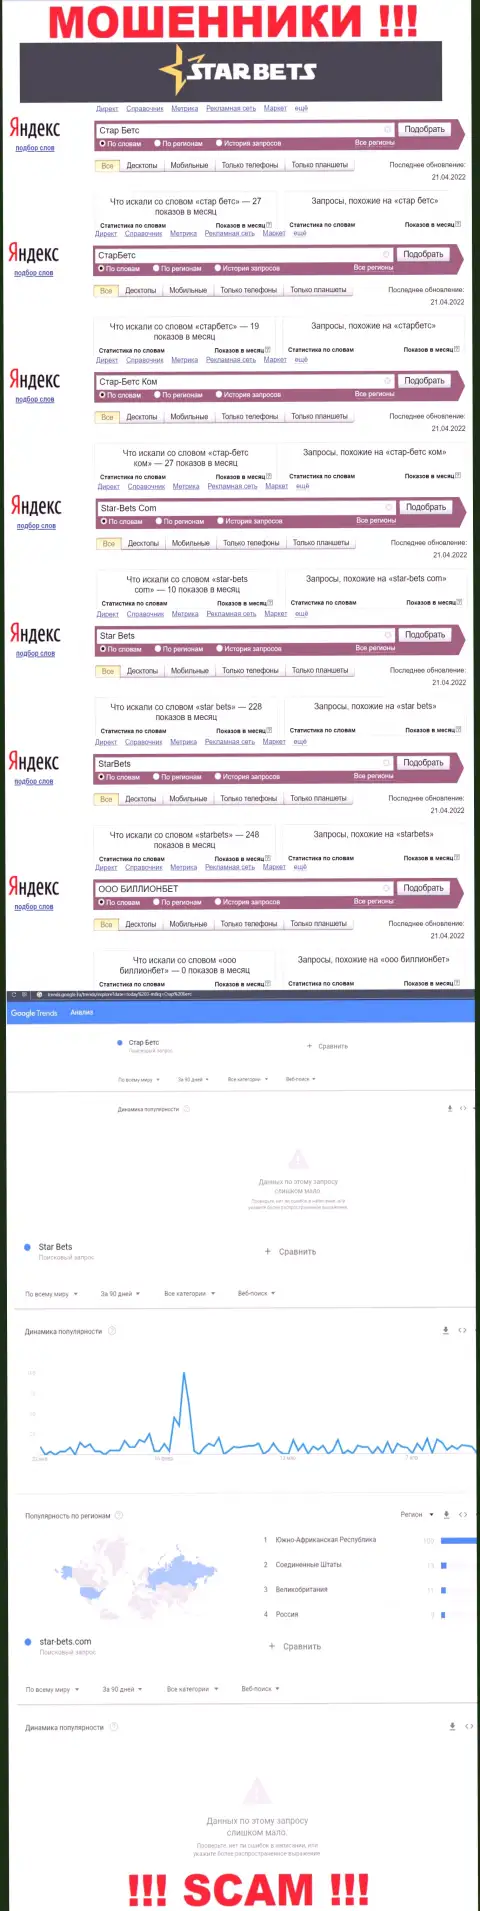 Скриншот итогов поисковых запросов по преступно действующей организации Стар Бетс